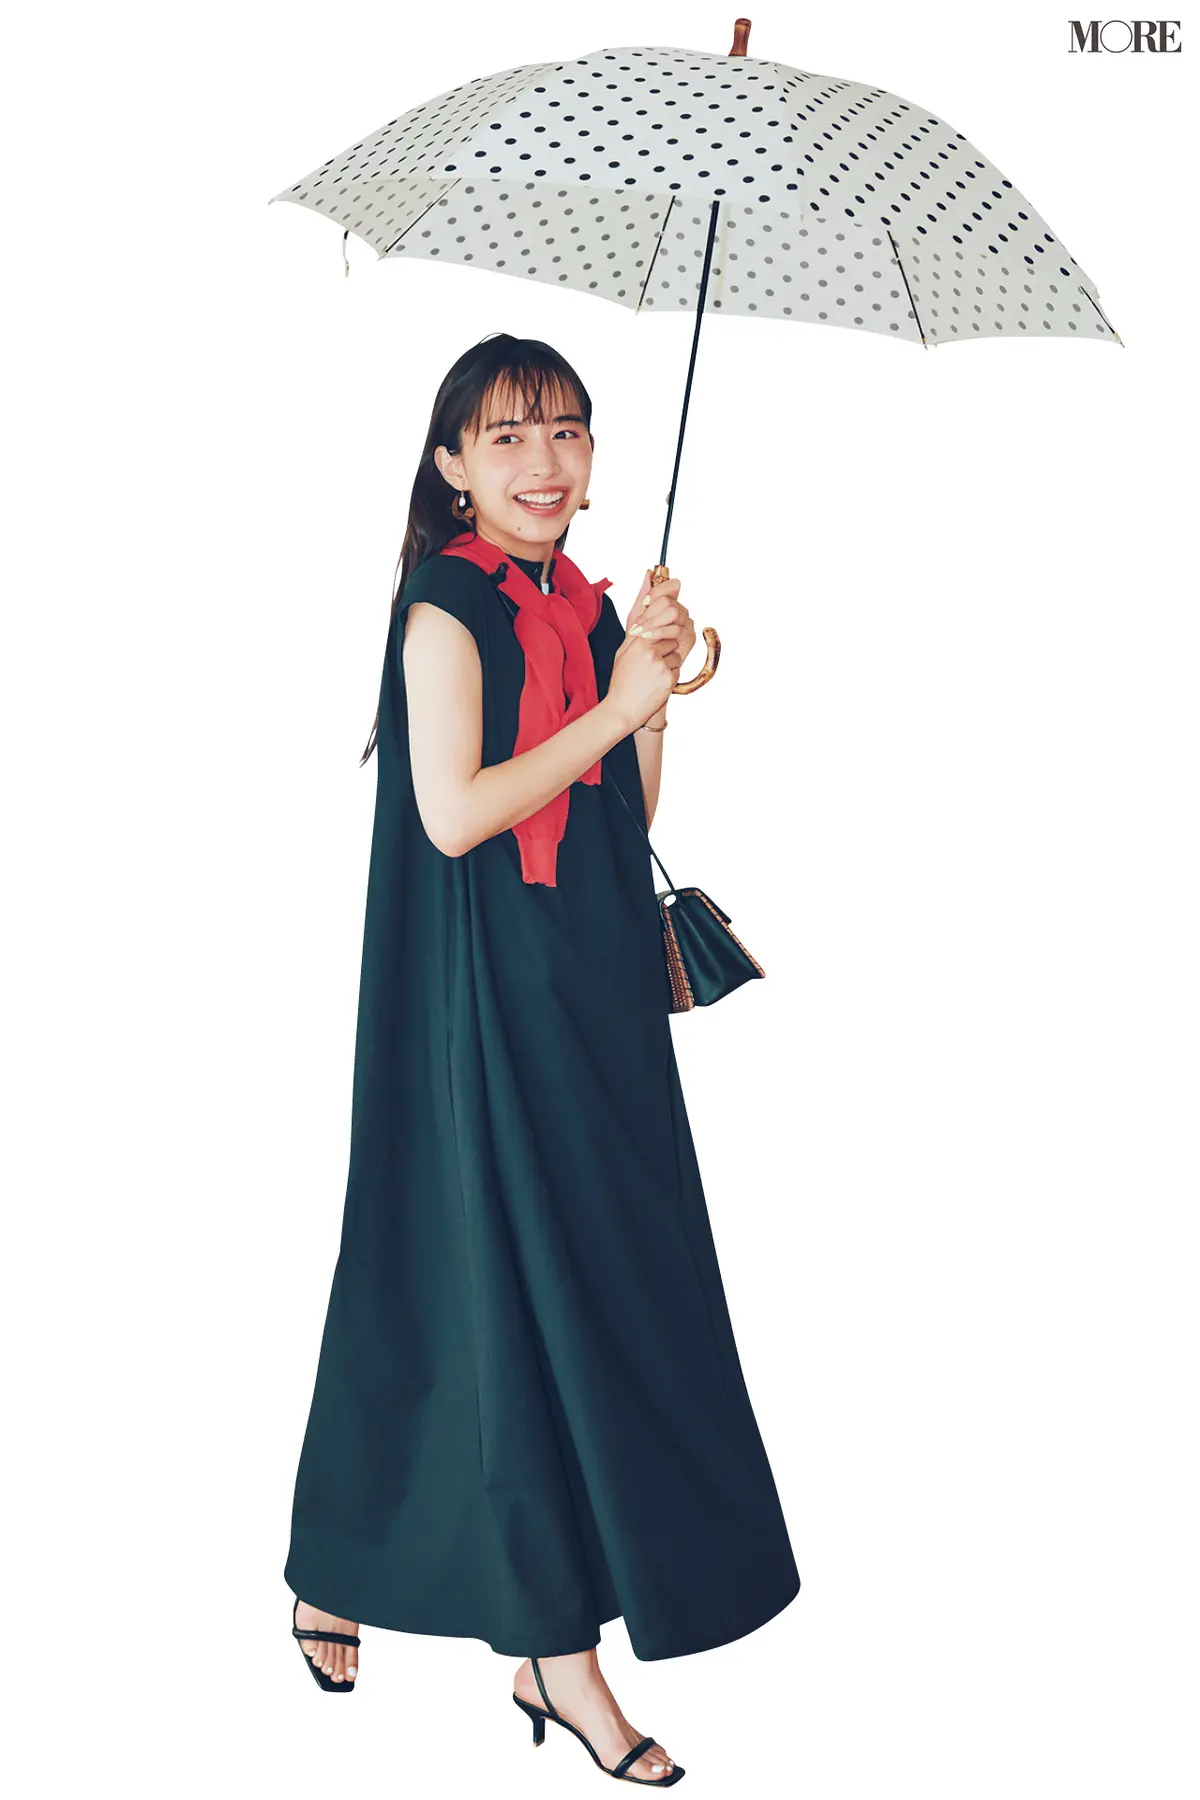 黒ワンピースを着て傘をさすモデル